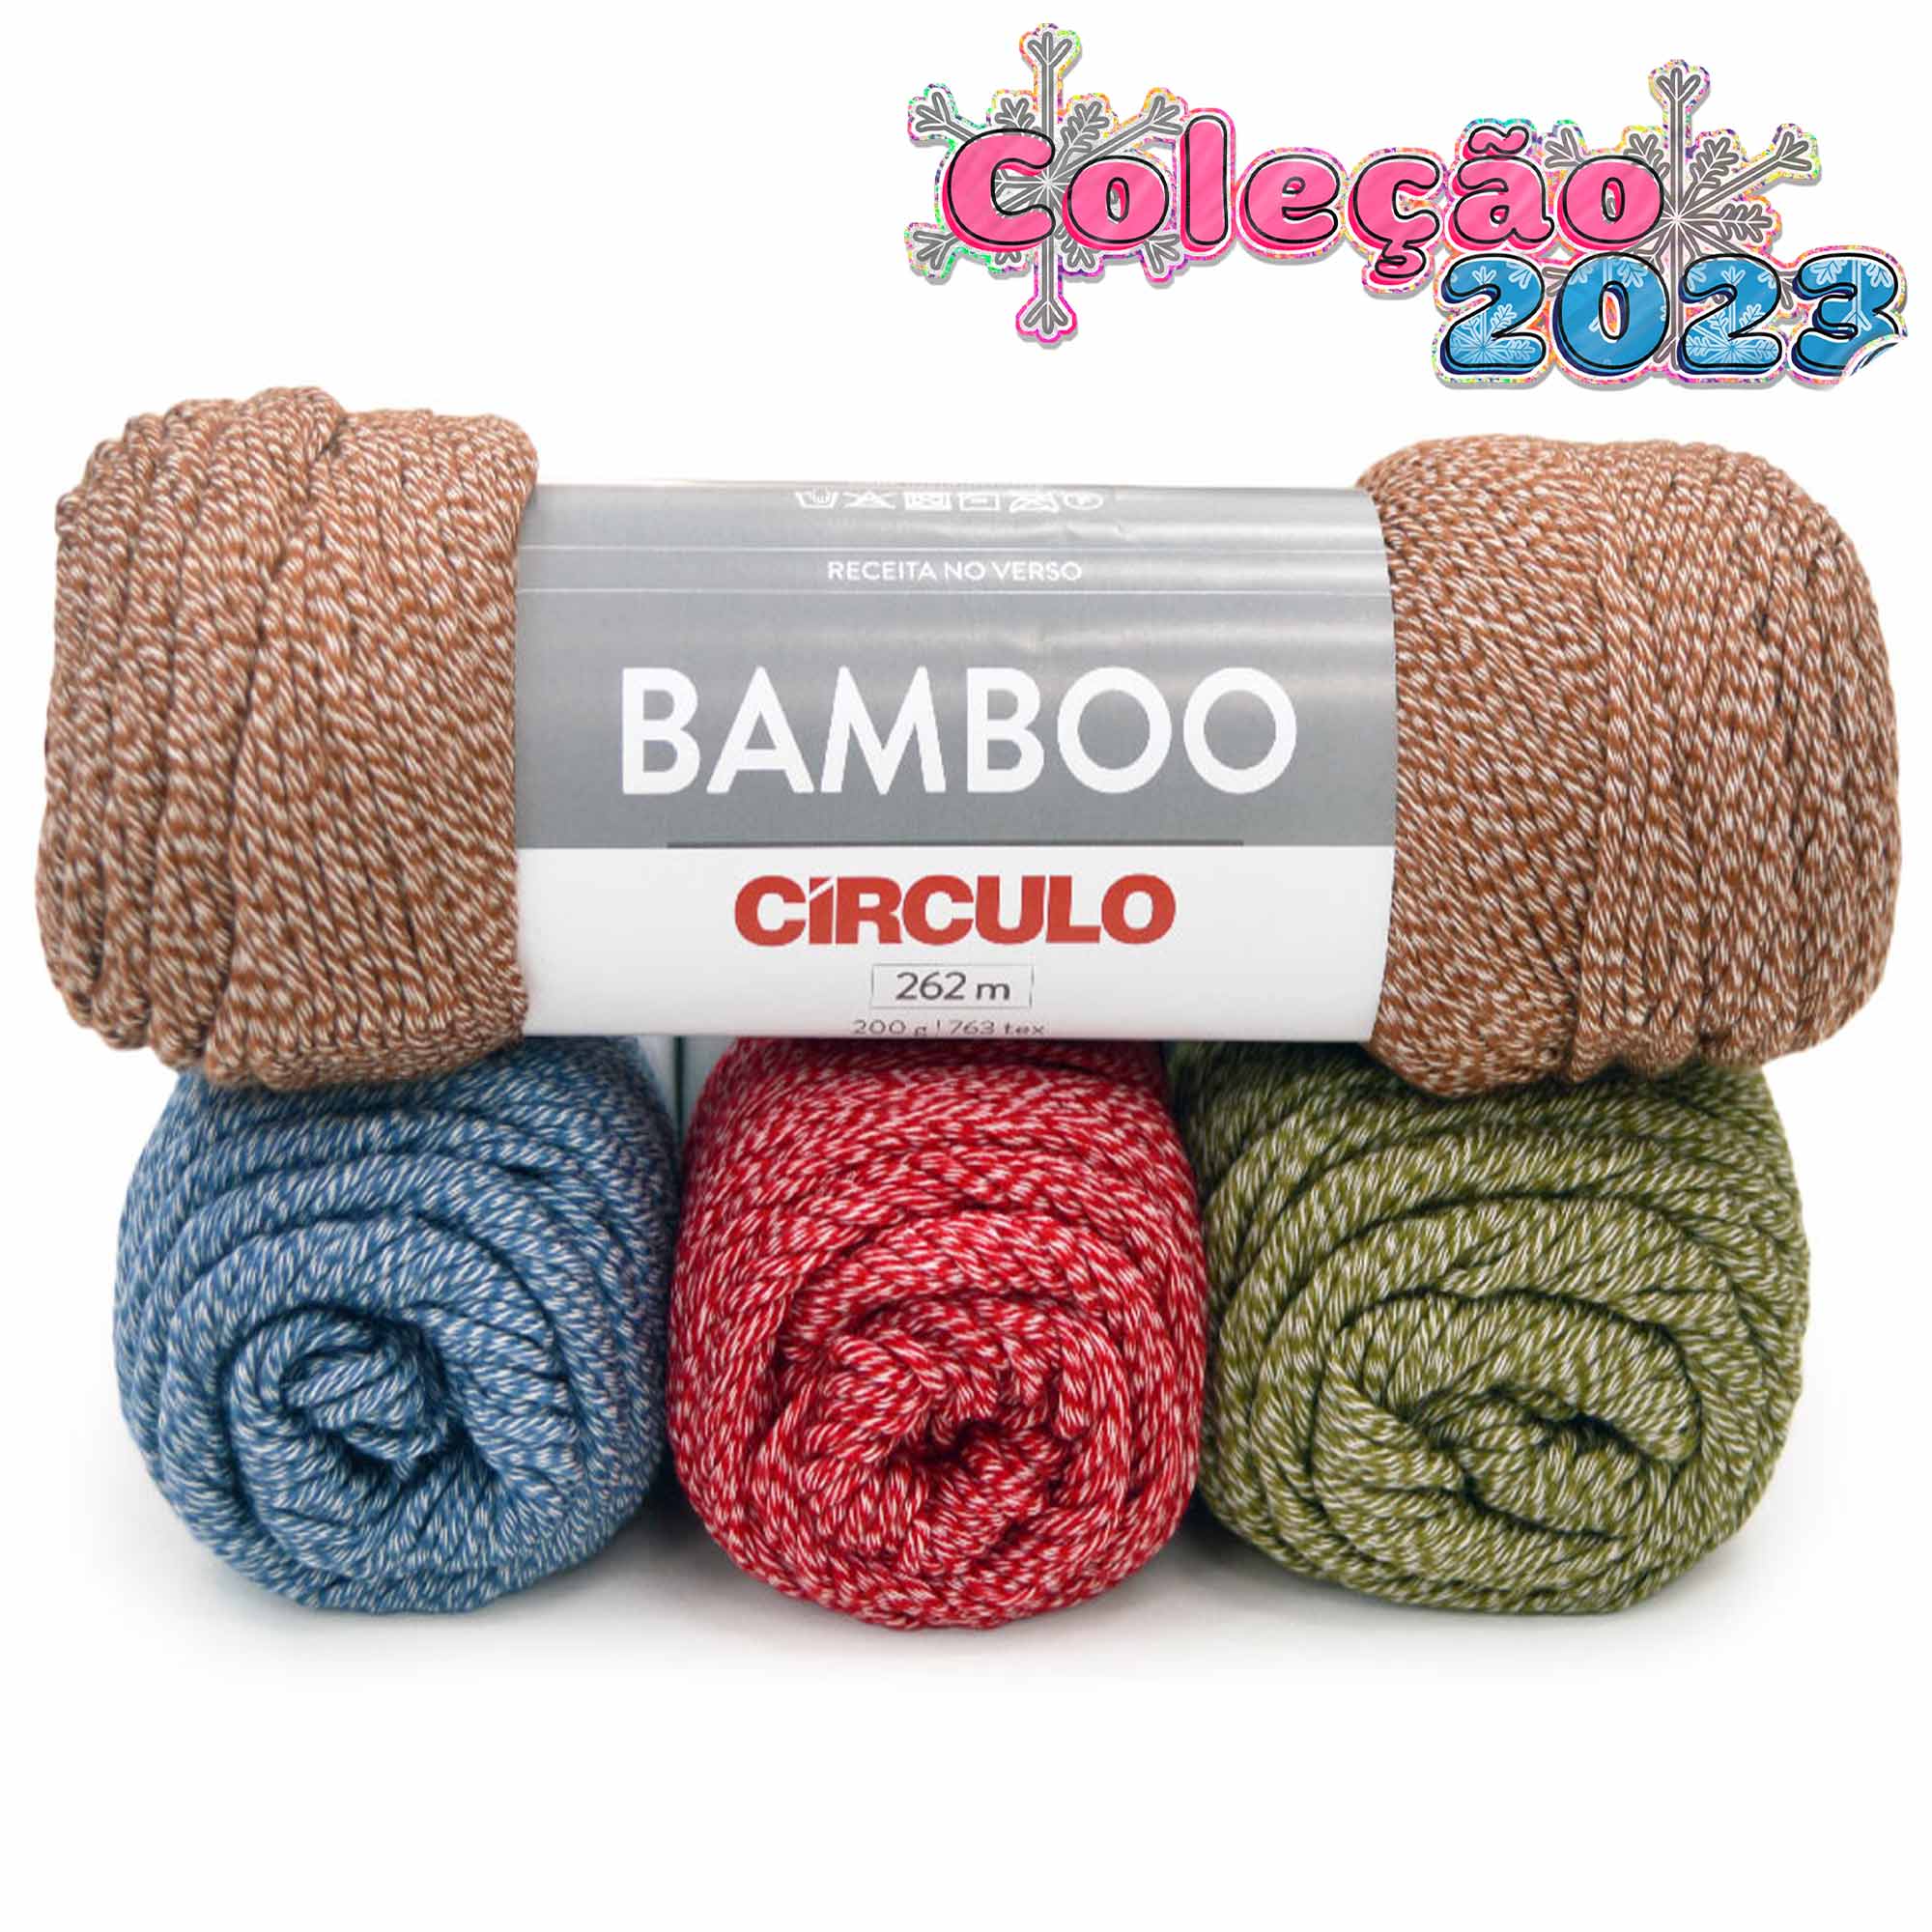 La-Bamboo-Circulo-200-g-Capa-2023-Della-Aviamentos